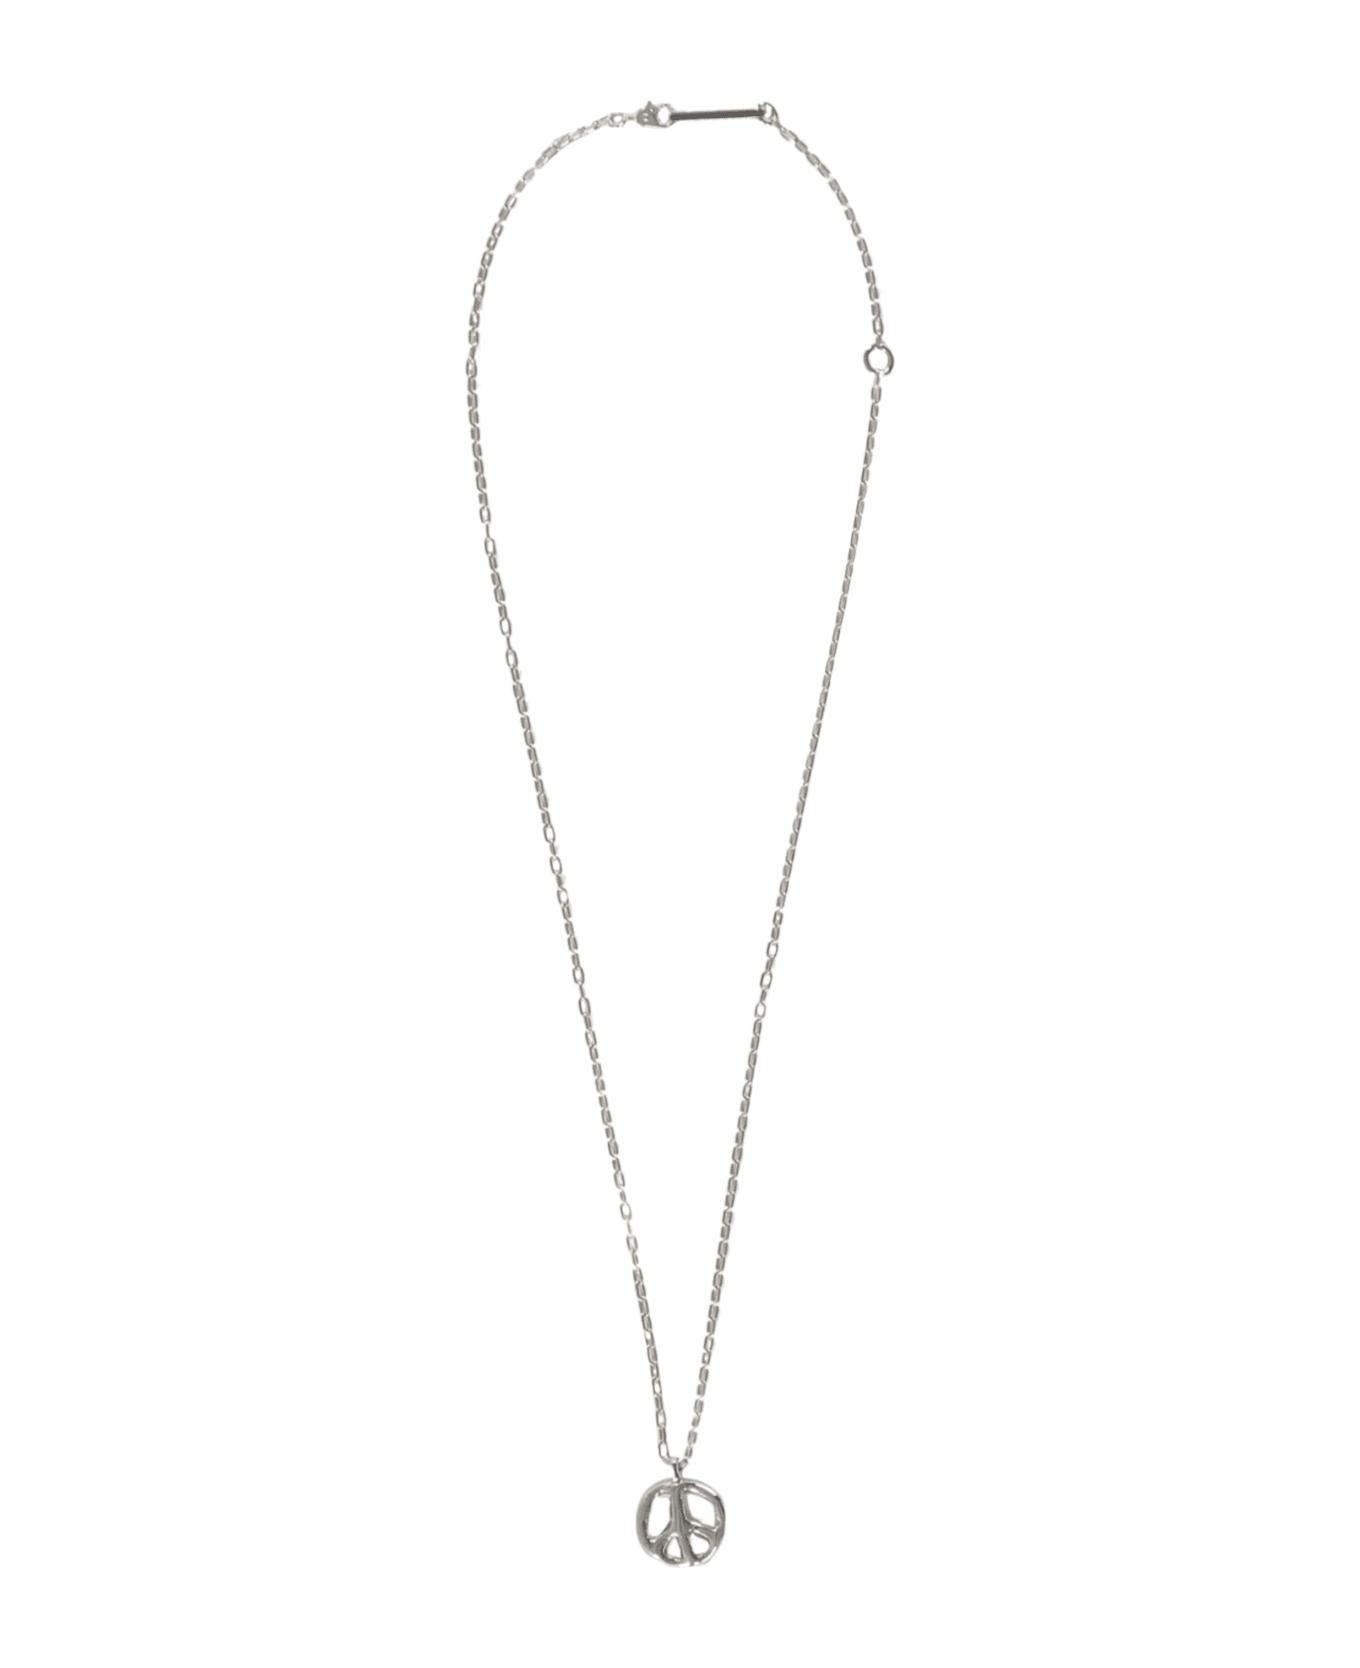 AMBUSH Chain Necklace With Decorative Pendant - silver